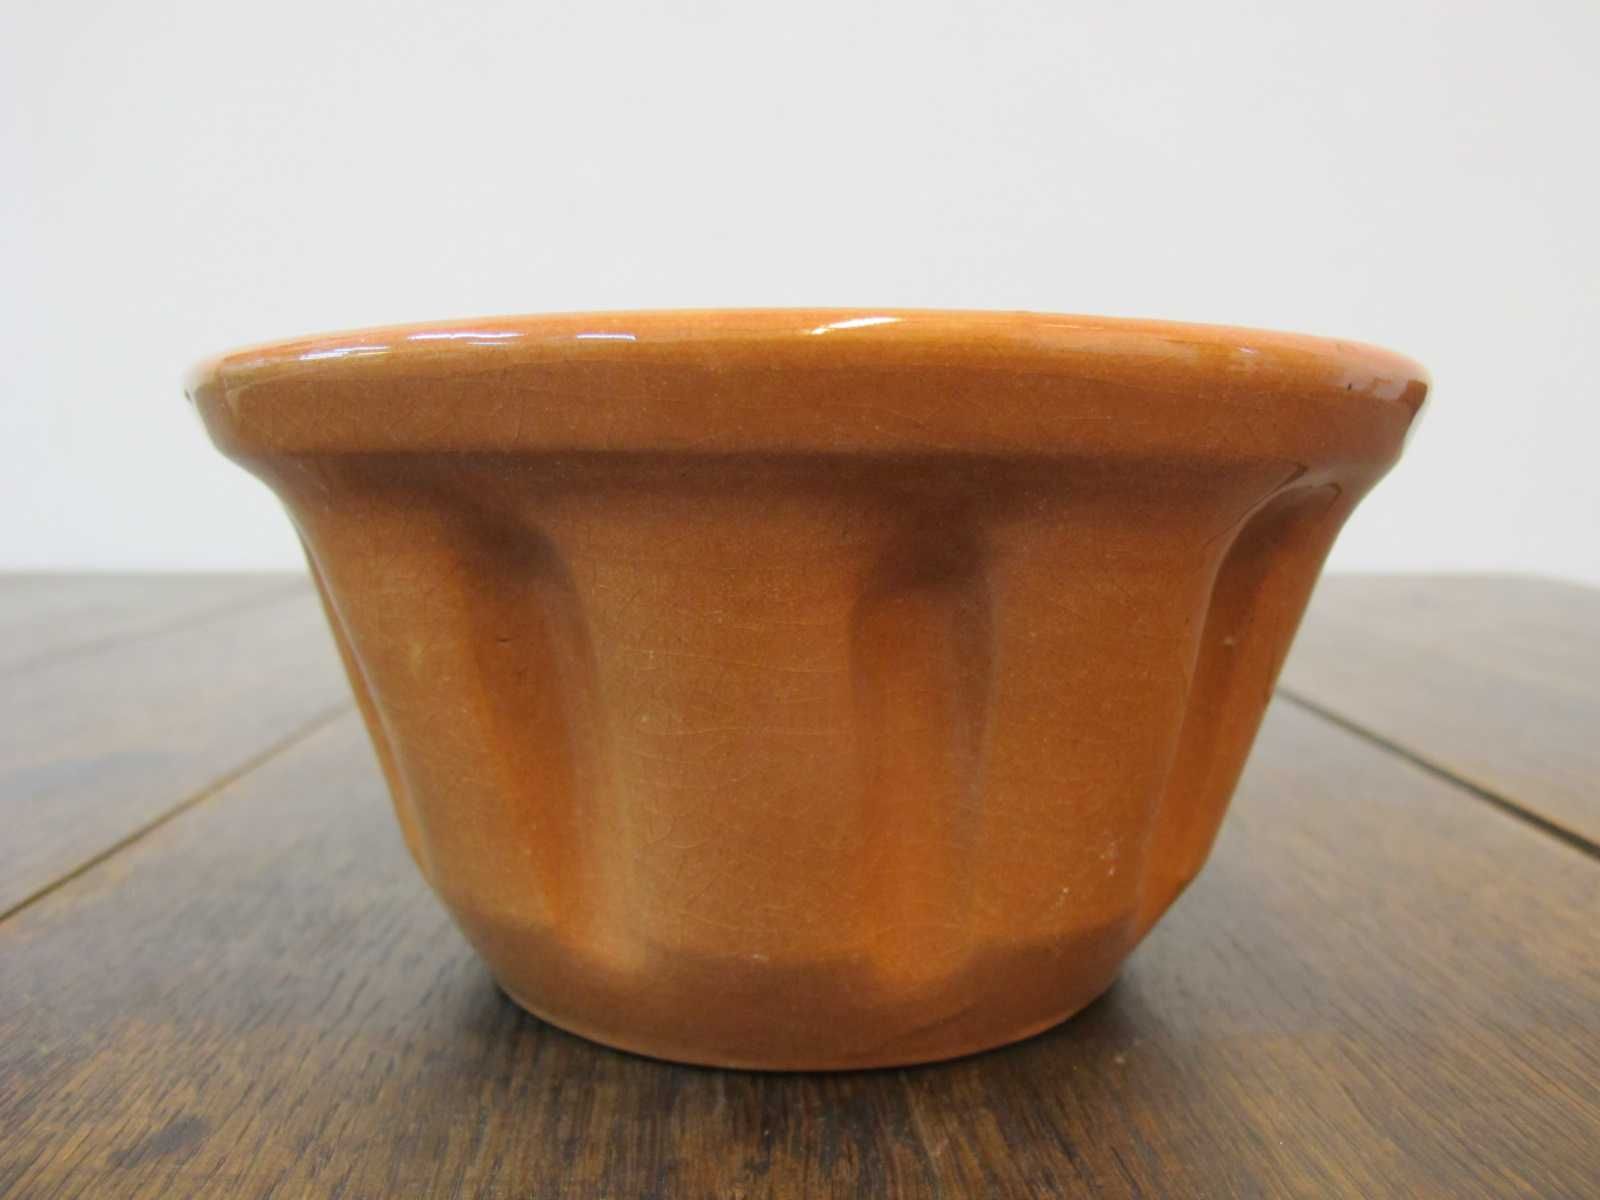 Forma foremka ceramiczna z kominem na babkę do koszyczka wielkanocnego